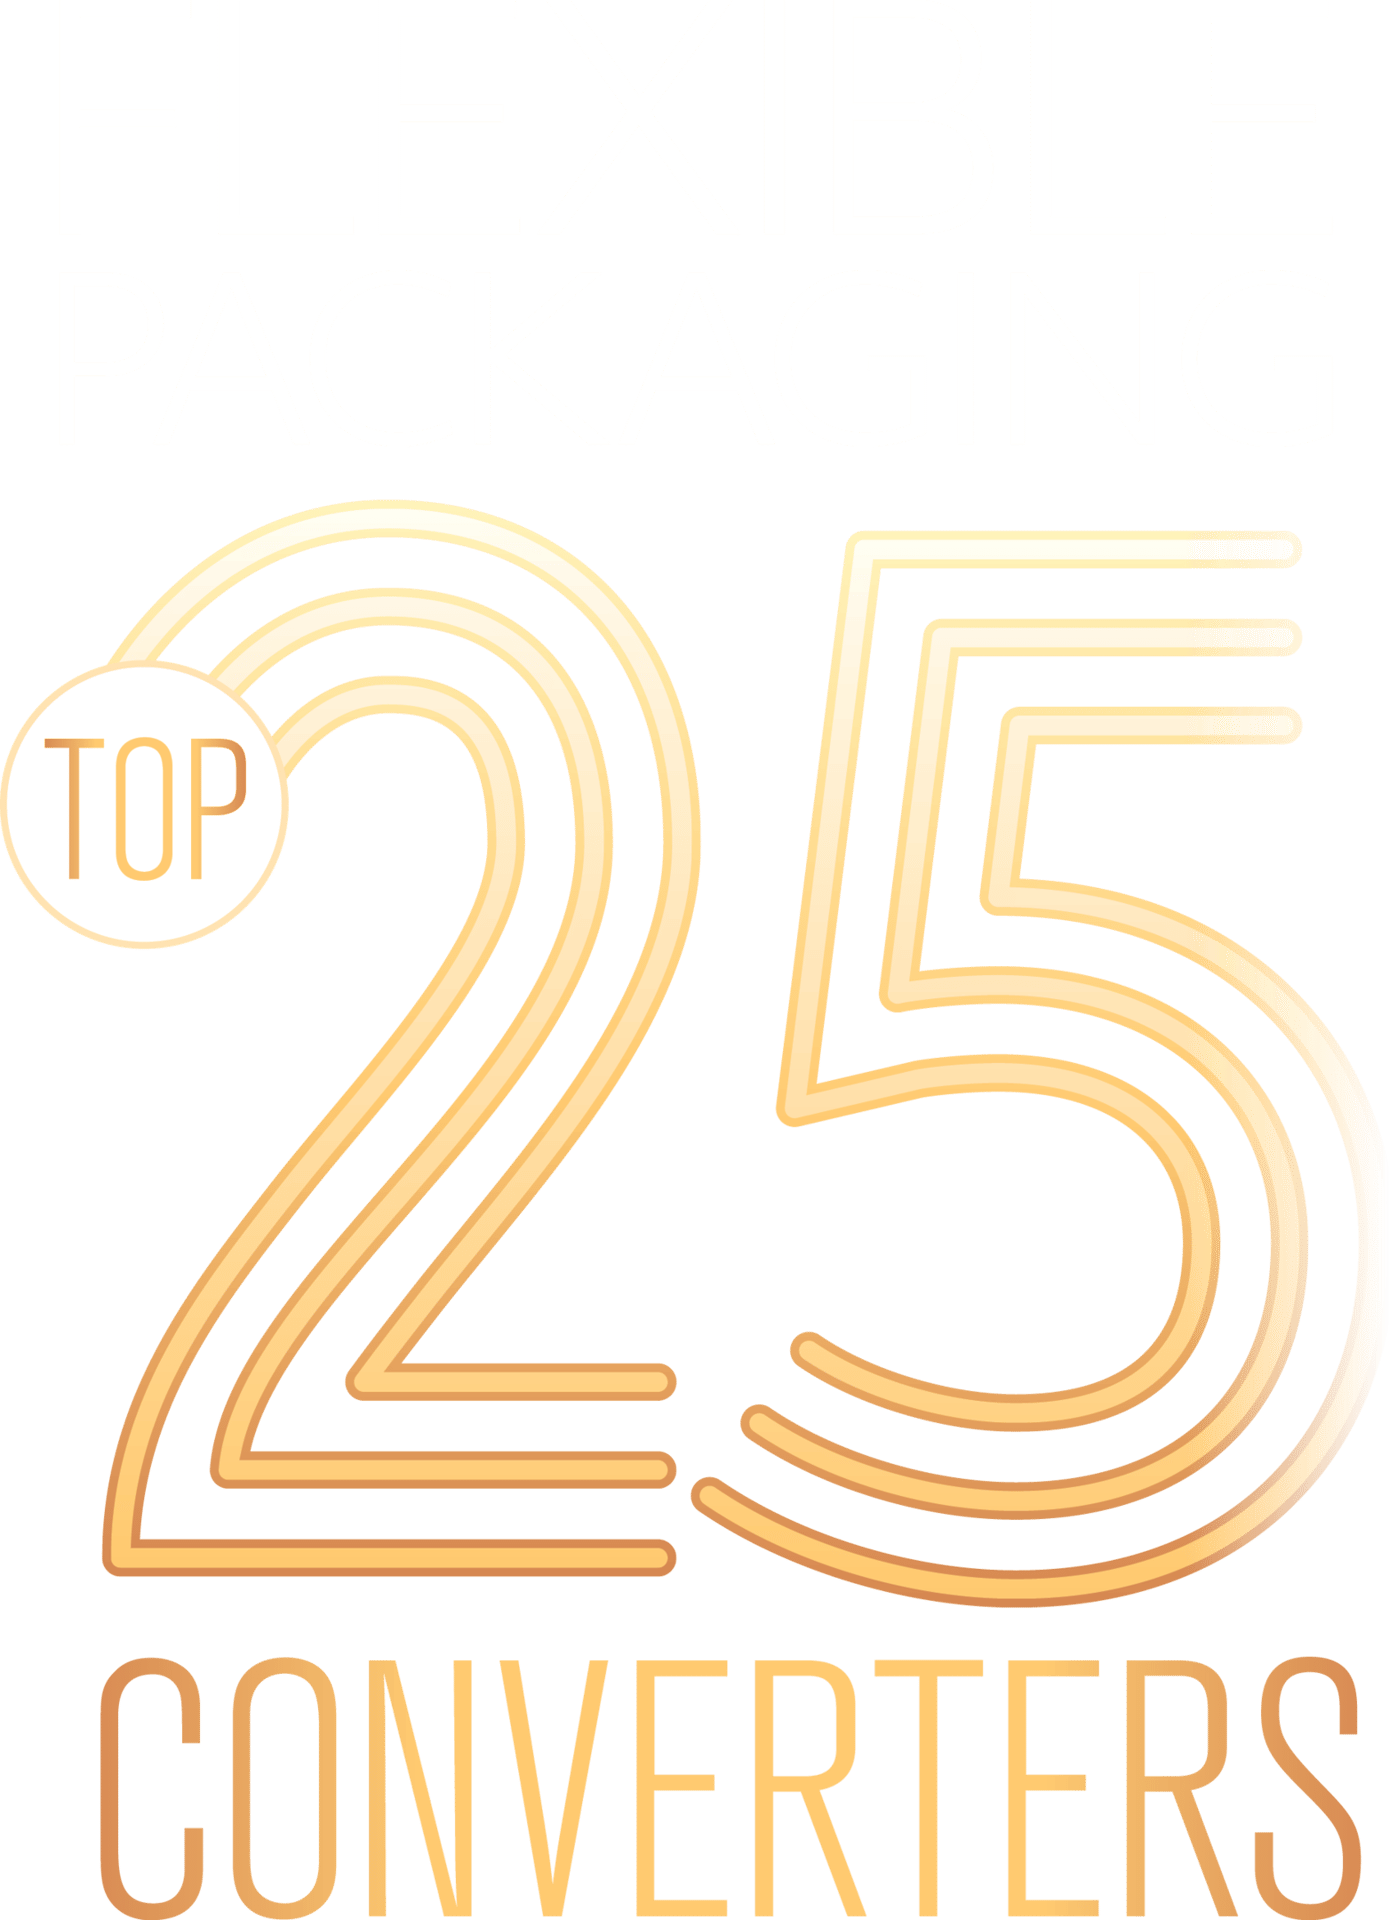 Flexible Packaging: Top 25 Converters